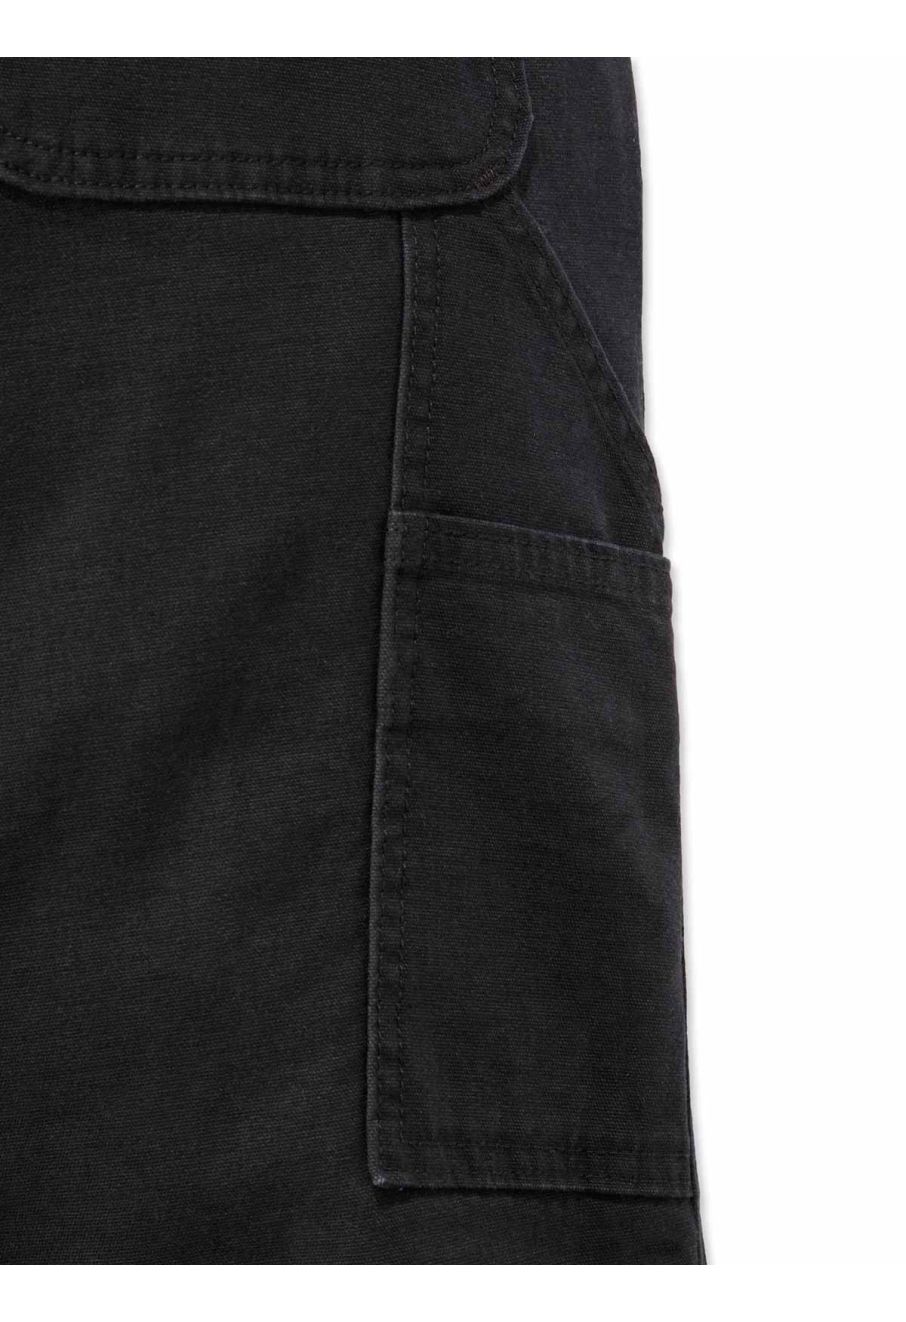 Carhartt 102080 Women's Original Fit Crawford Pant - Black